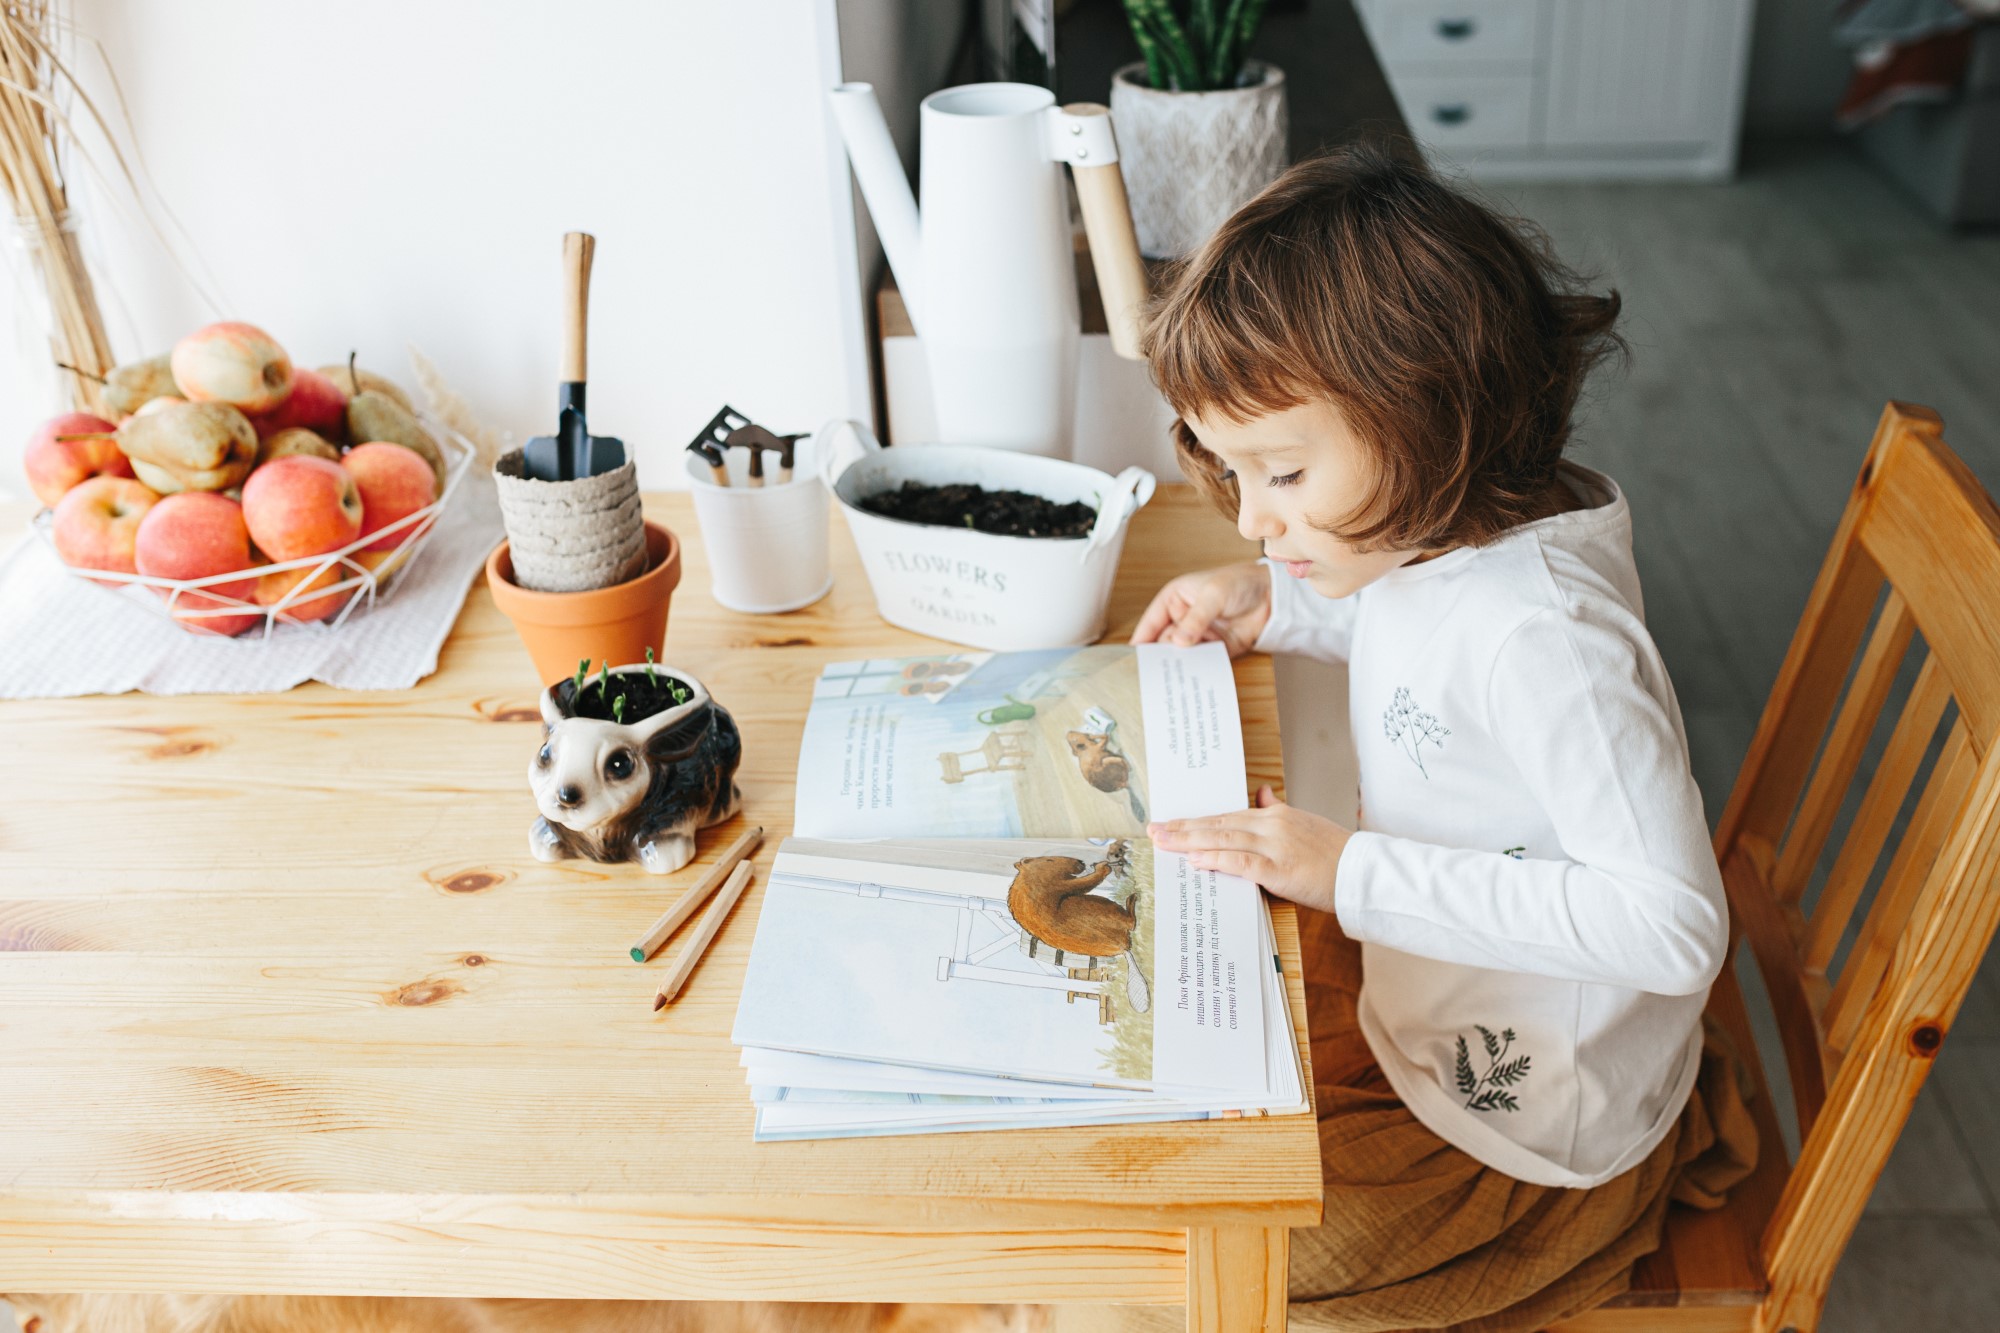 Un petit fille lit un livre, sur la table des outils de jardinage et des petites pousses